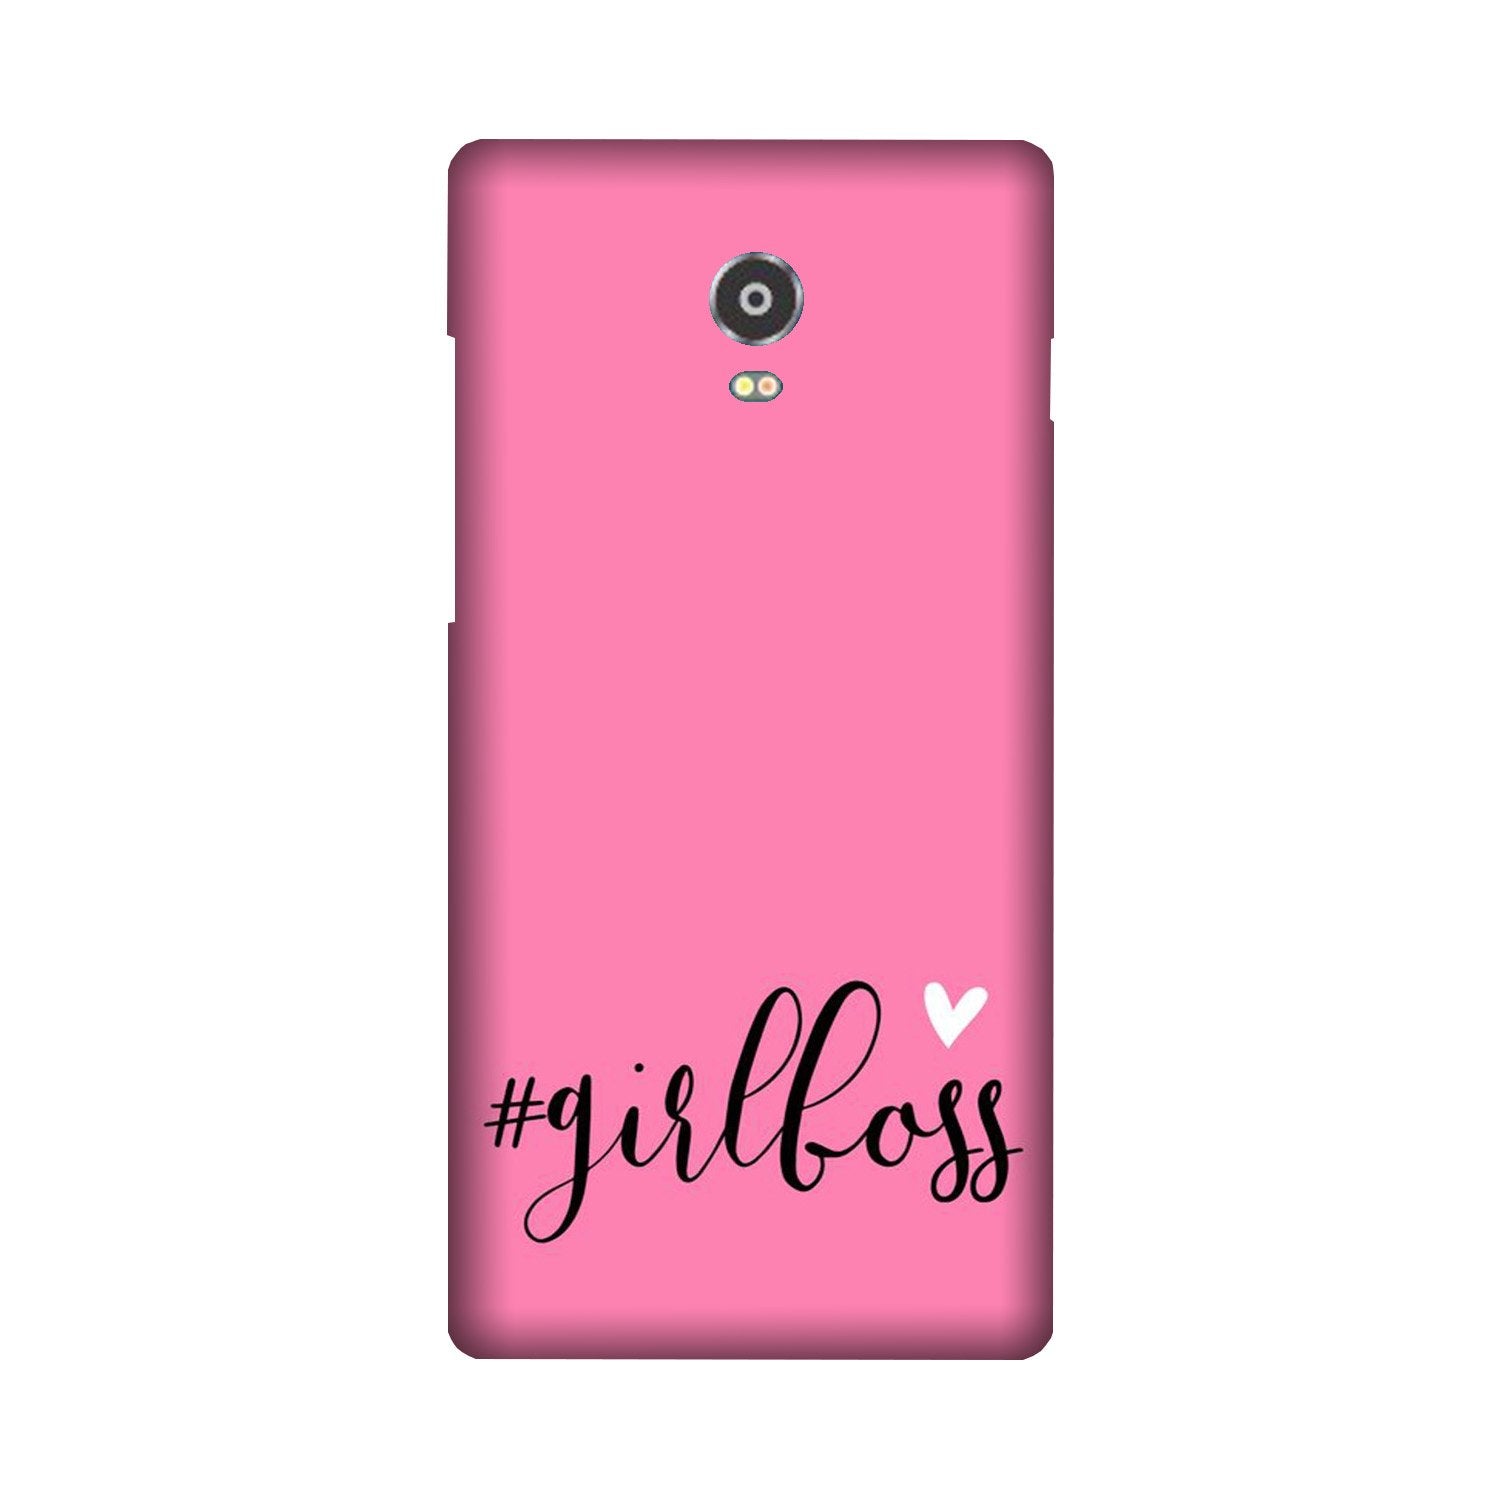 Girl Boss Pink Case for Lenovo Vibe P1 (Design No. 269)